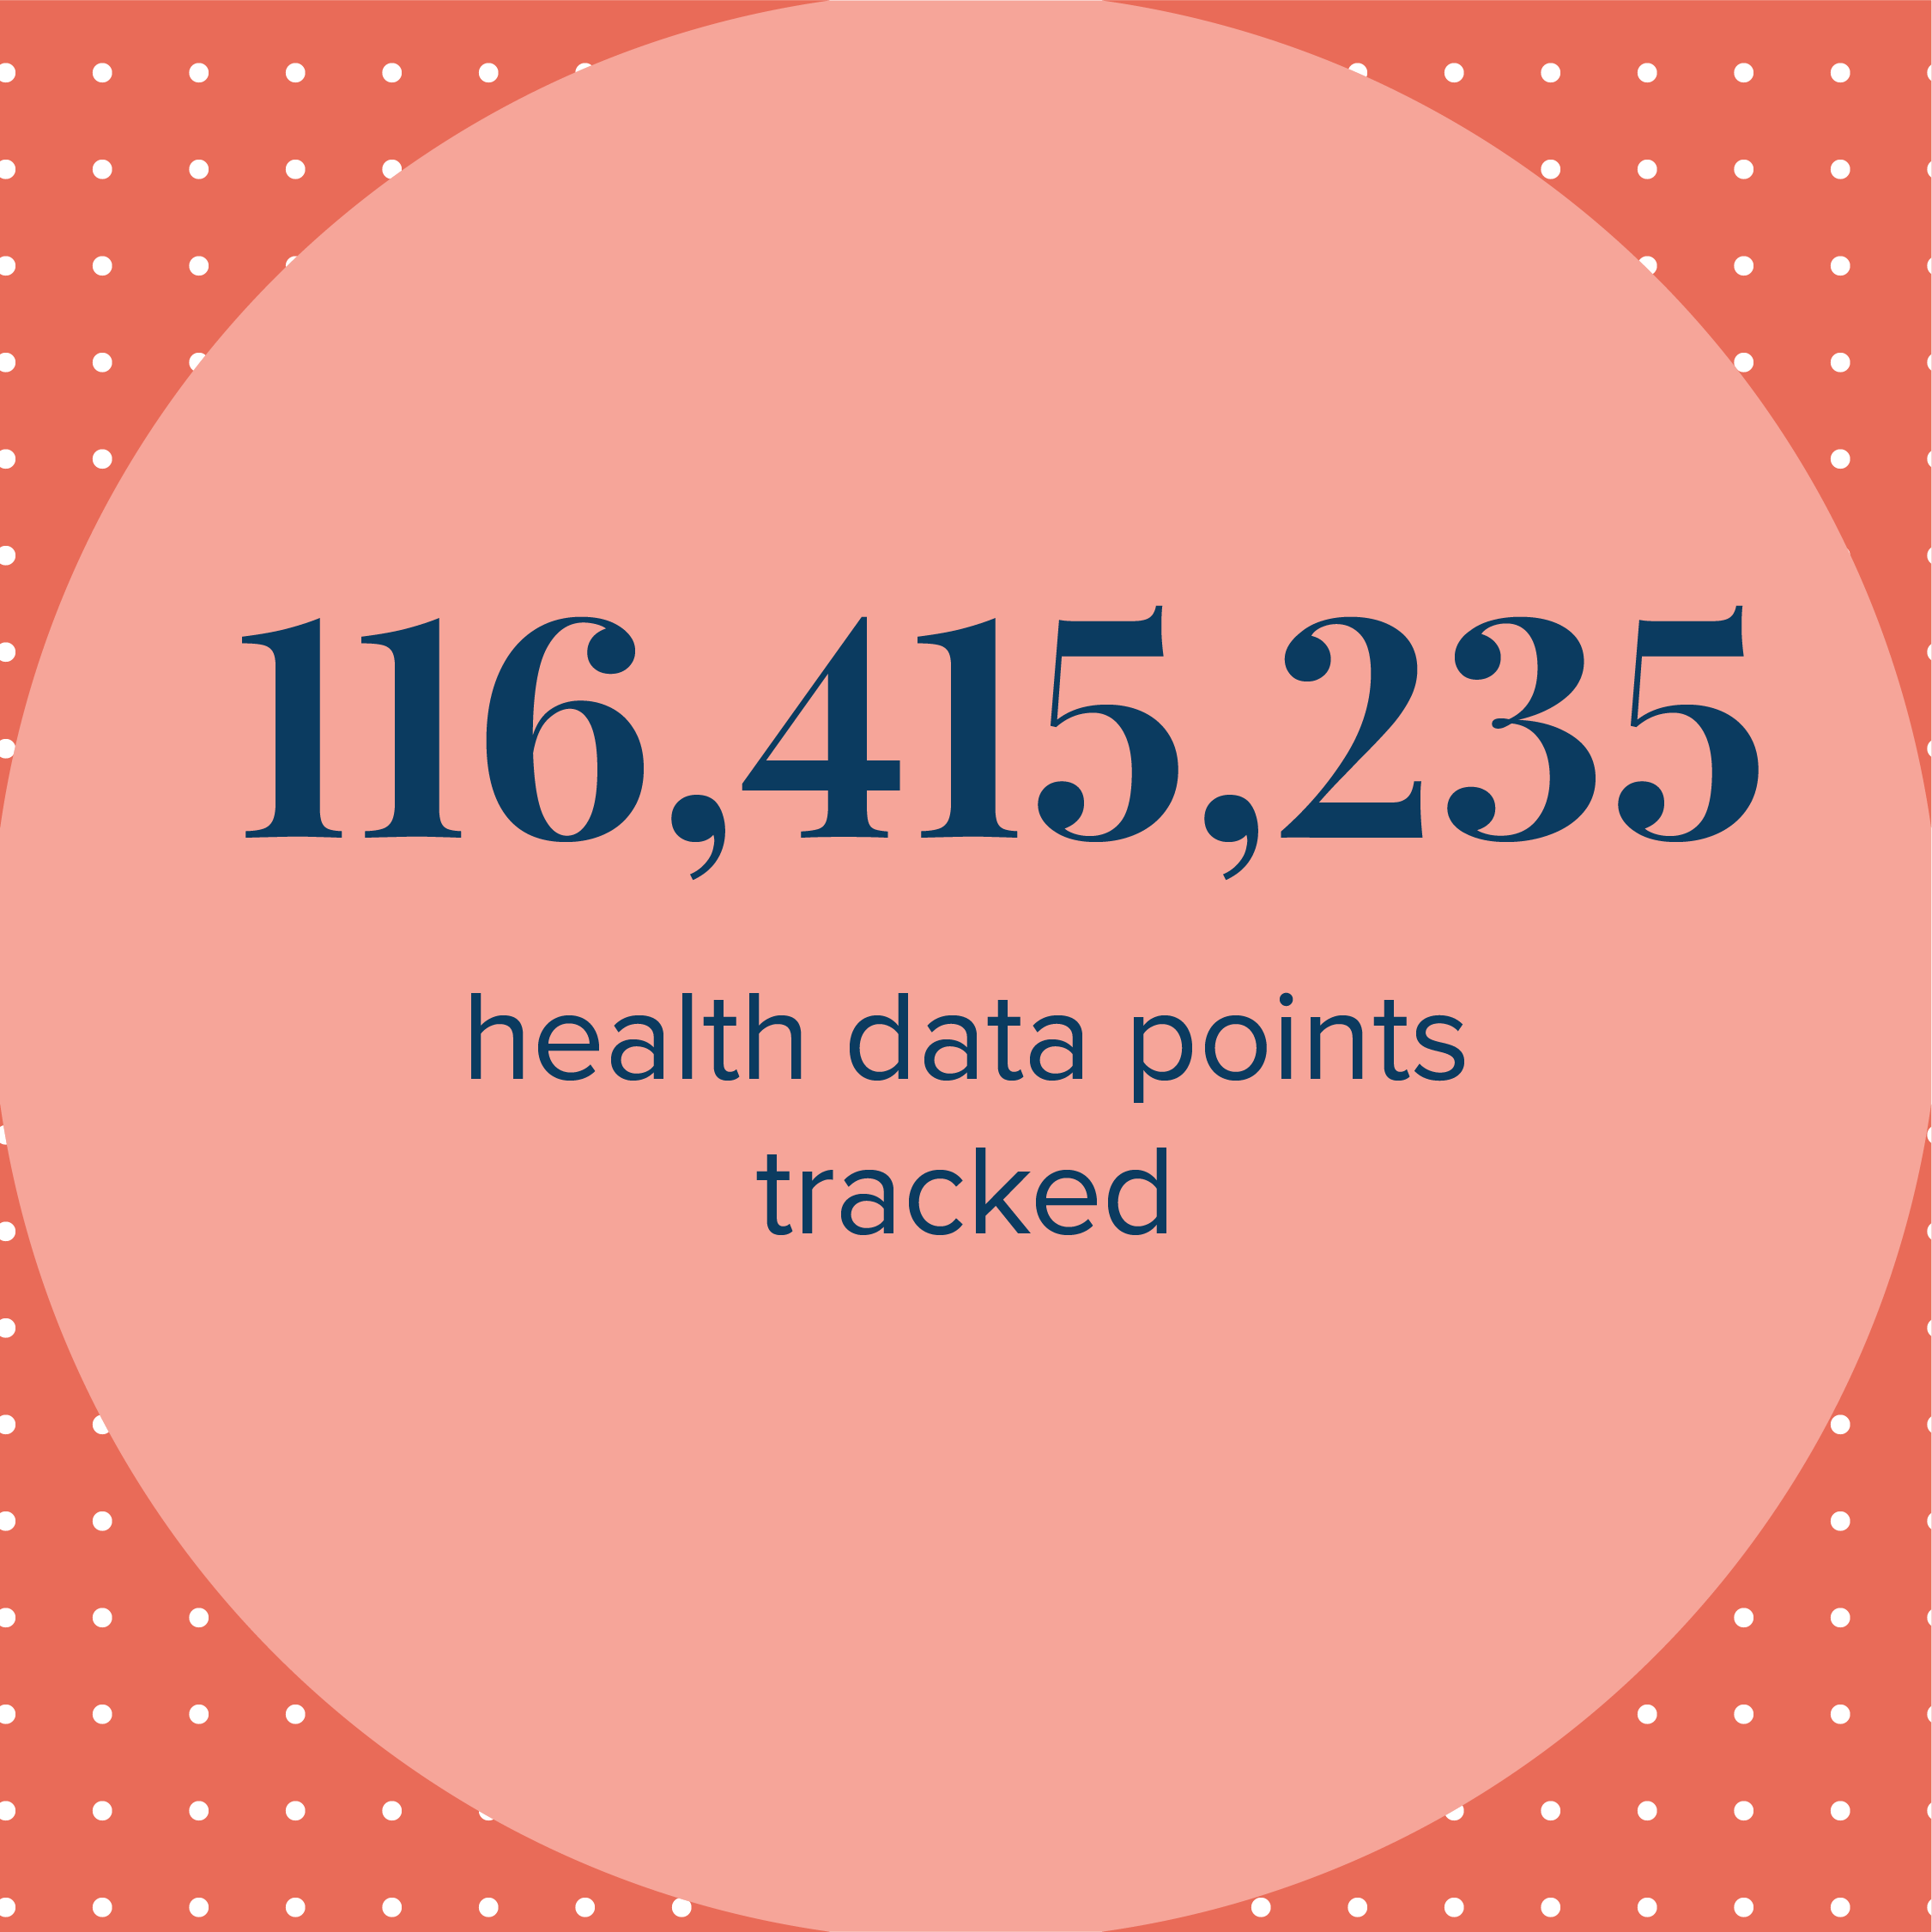 521,642 health assessments taken